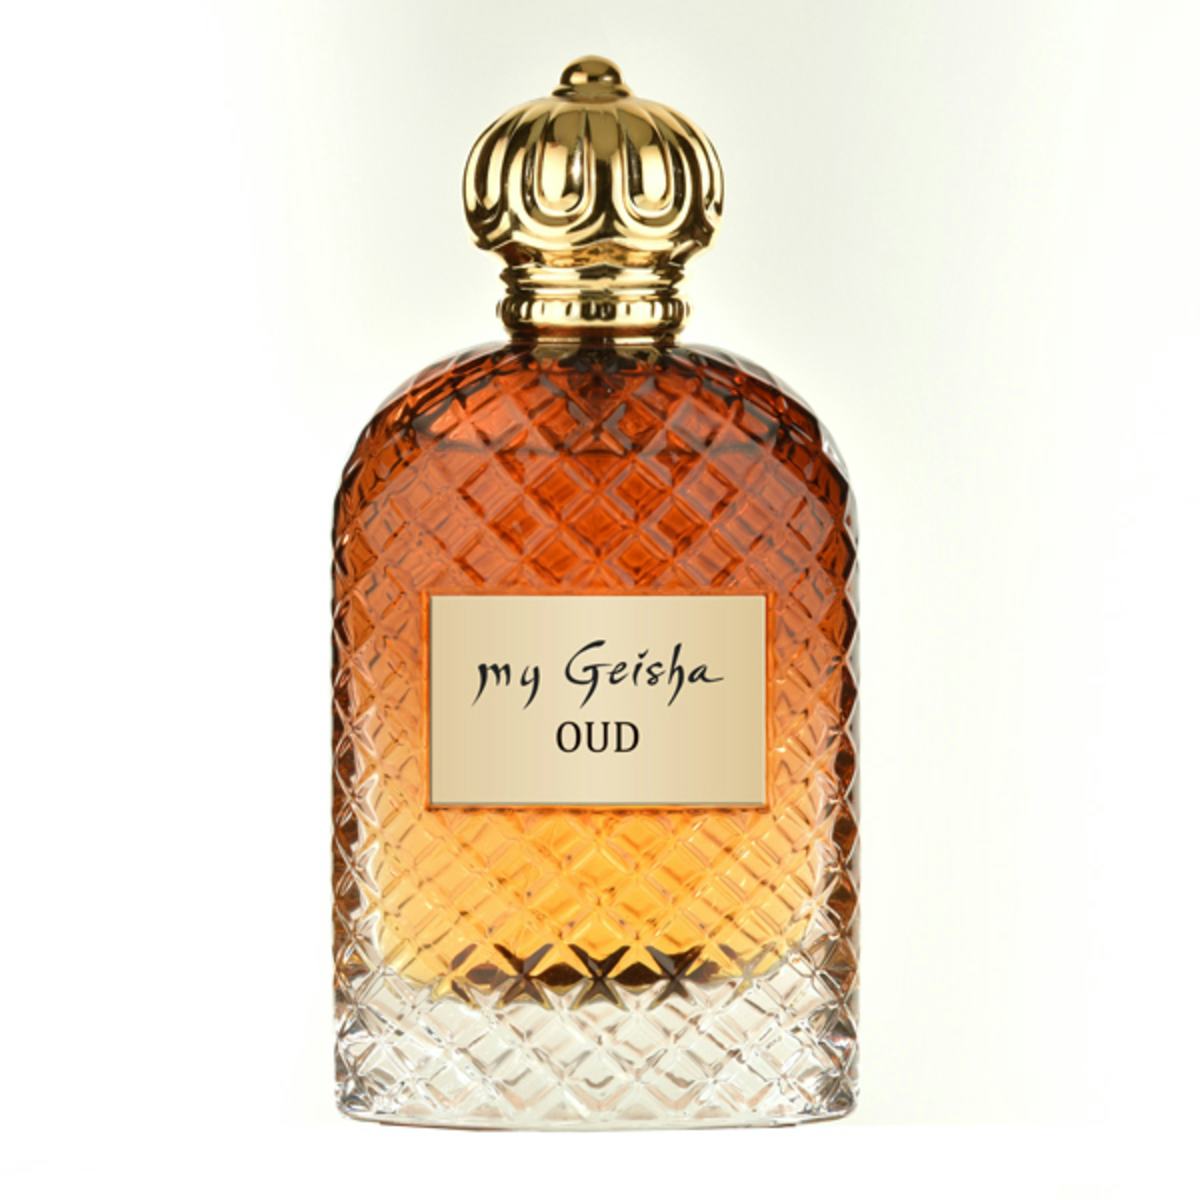 Extrait de parfum OUD 100 ml, prodotto artigianale per la vendita diretta in Svizzera